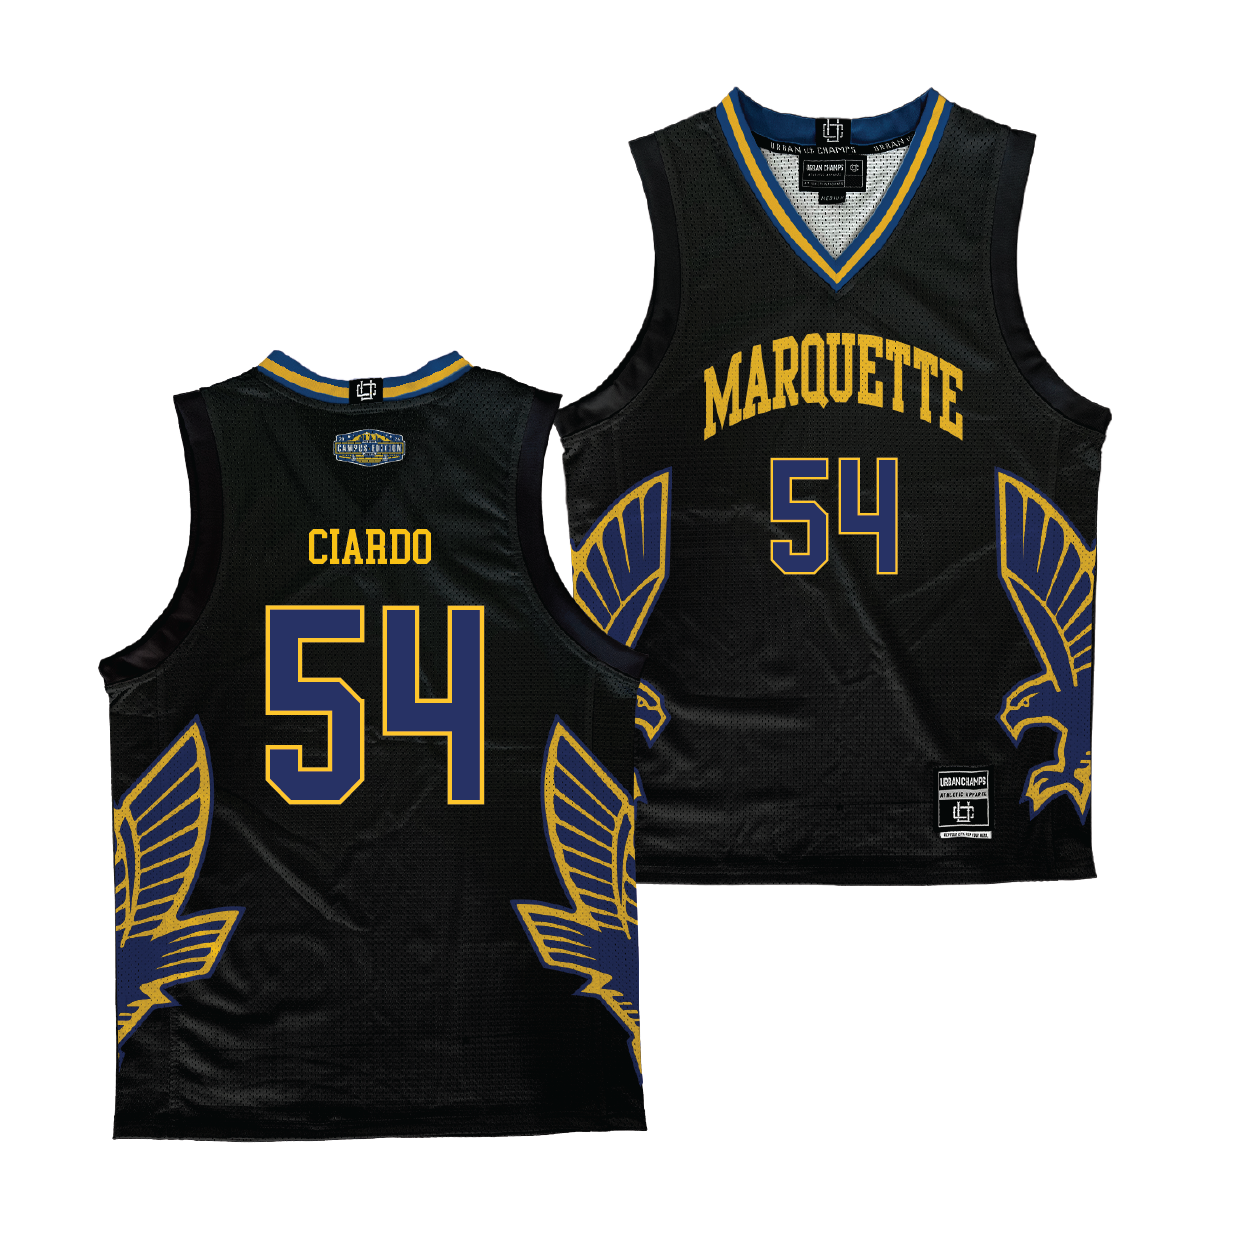 Marquette Campus Edition NIL Jersey - Jake Ciardo | #54